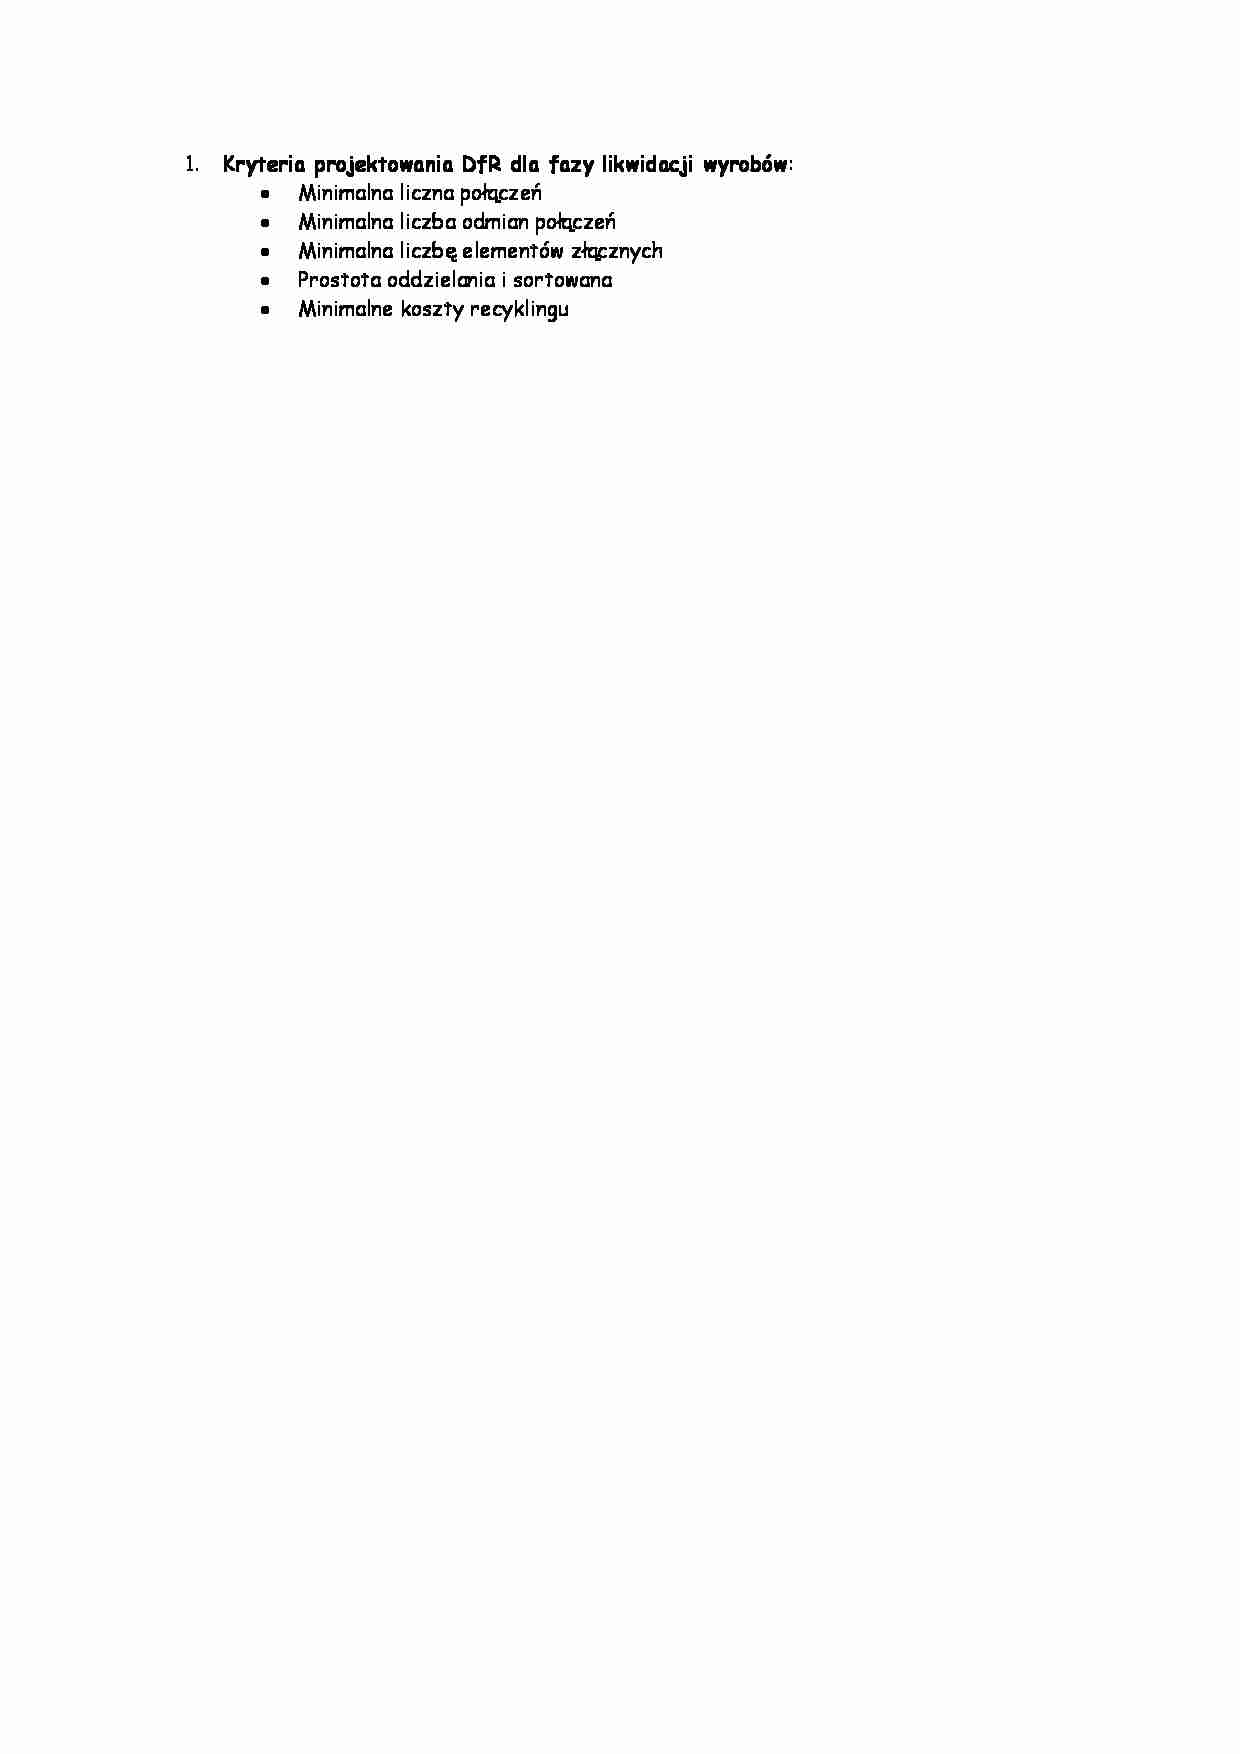 Kryteria projektowania DfR dla fazy likwidacji wyrobów - strona 1